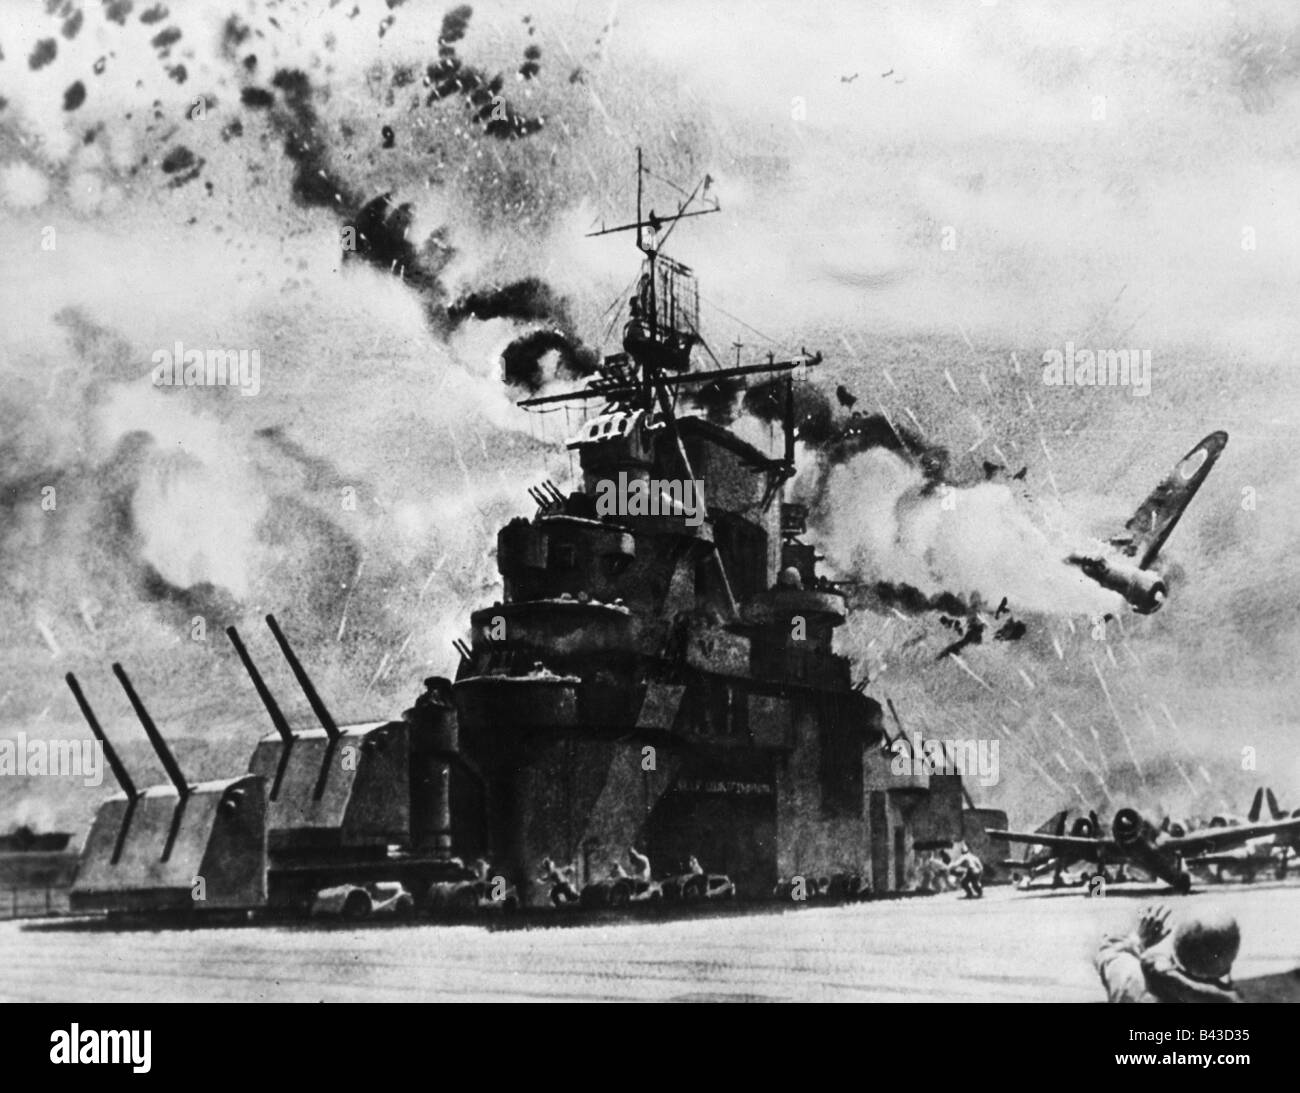 Ereignisse, Zweiter Weltkrieg/Zweiter Weltkrieg, Pazifik, Insel Santa Cruz, japanisches Flugzeug, das den Flugzeugträger "USS Hornet" angreift, wird vom AA-Feuer, 26.10.1942, getroffen, nachdem es von Dwight C. Chepler gemalt wurde, Stockfoto